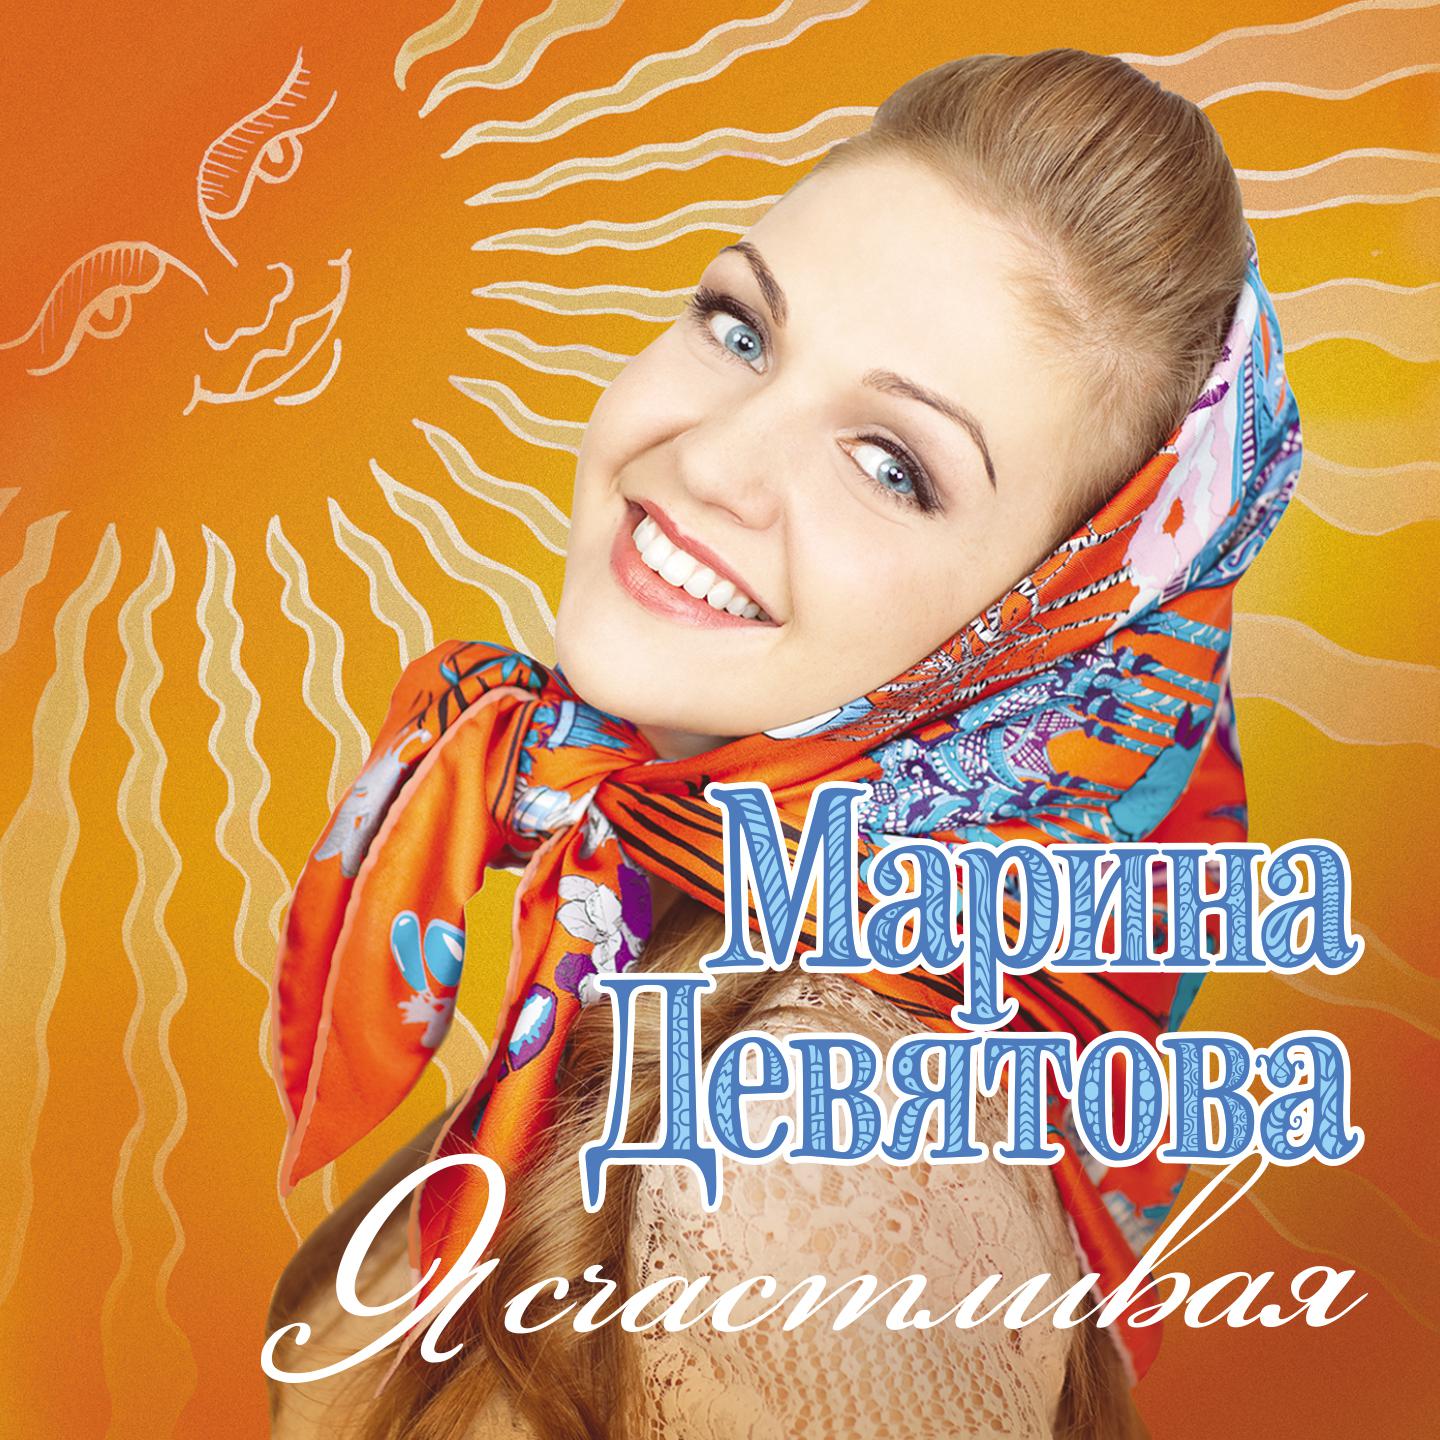 Марины Девятовой - я счастливая (2011). Слушать песню самая лучшая женщина